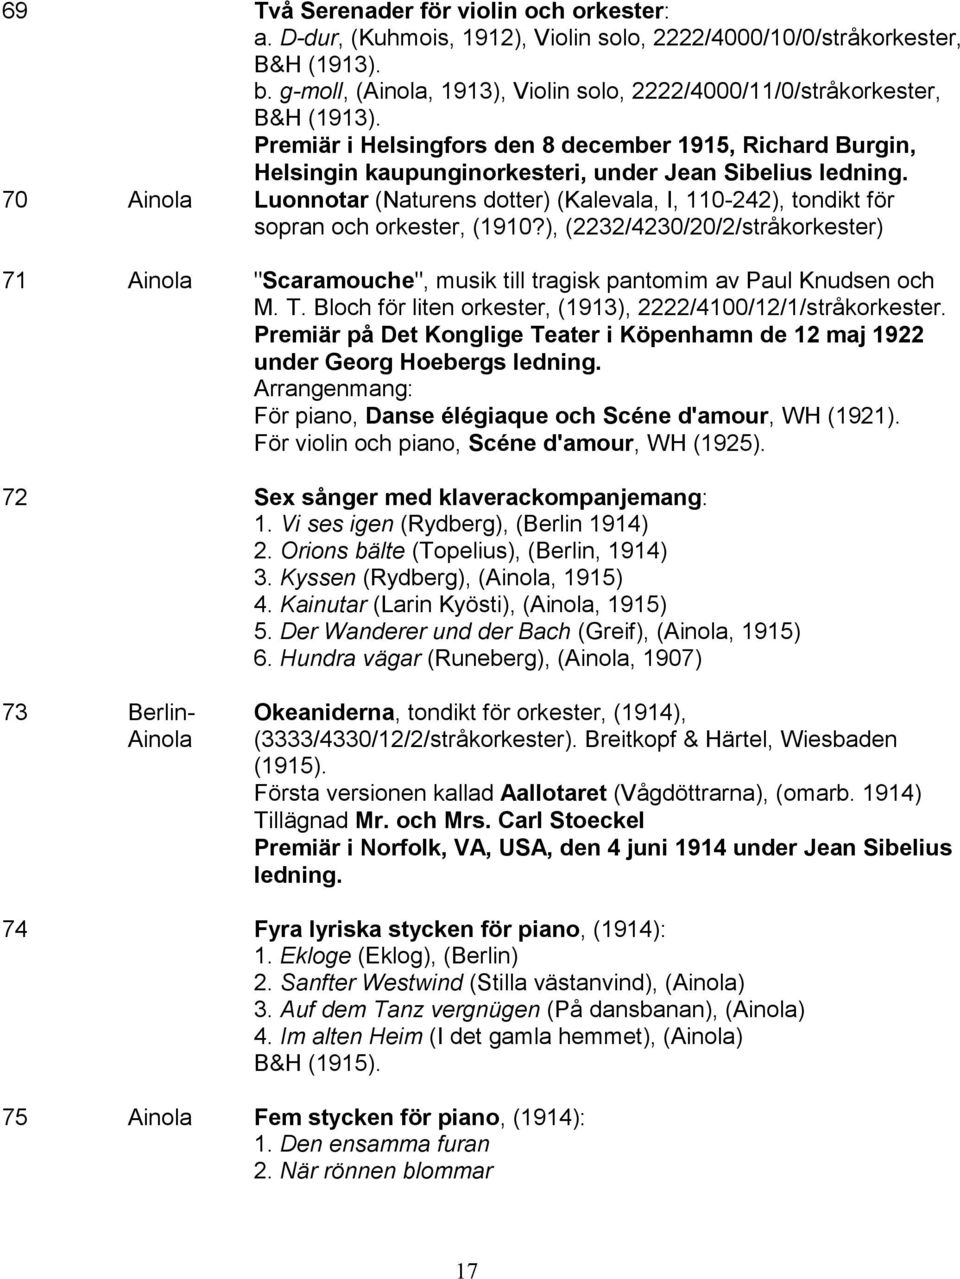 70 Ainola Luonnotar (Naturens dotter) (Kalevala, I, 110-242), tondikt för sopran och orkester, (1910?